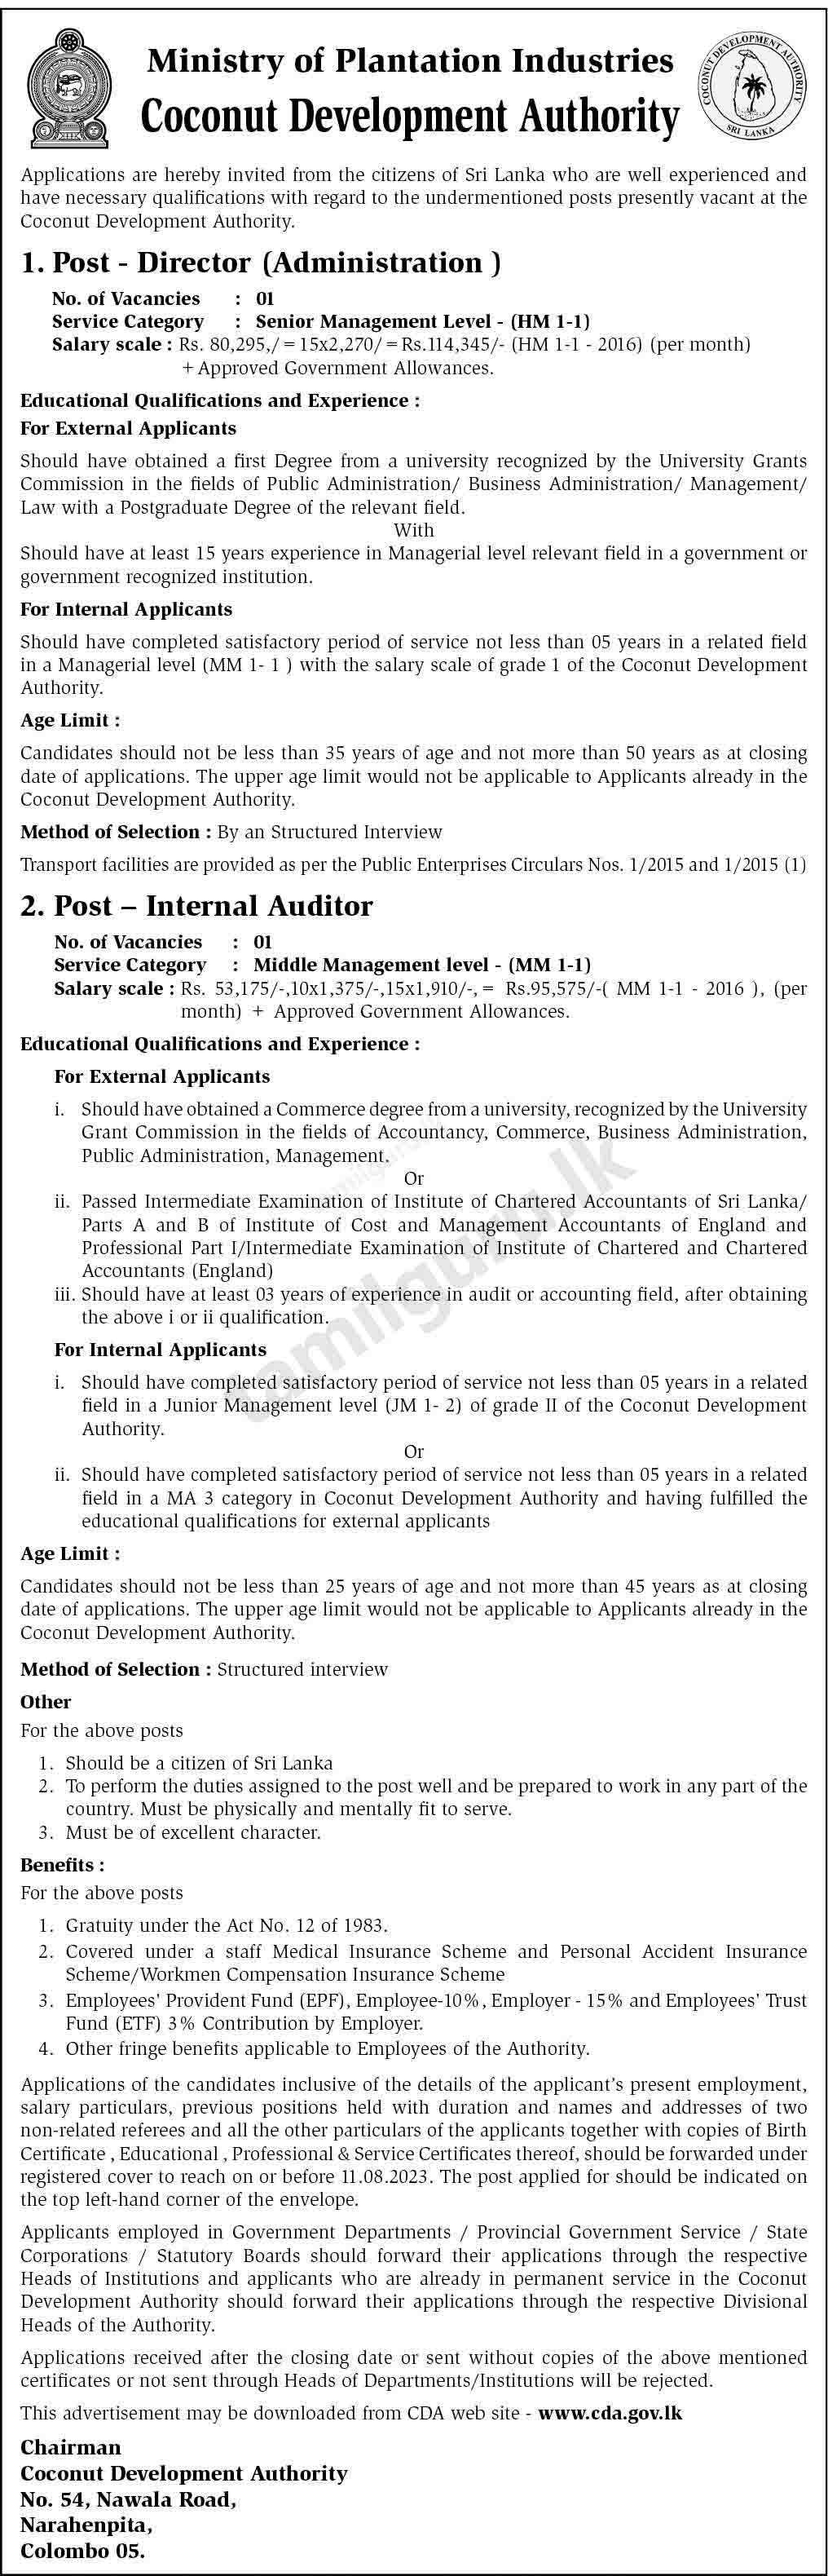 Coconut Development Authority (CDA) Vacancies 2023 - Director (Admin), Internal Auditor